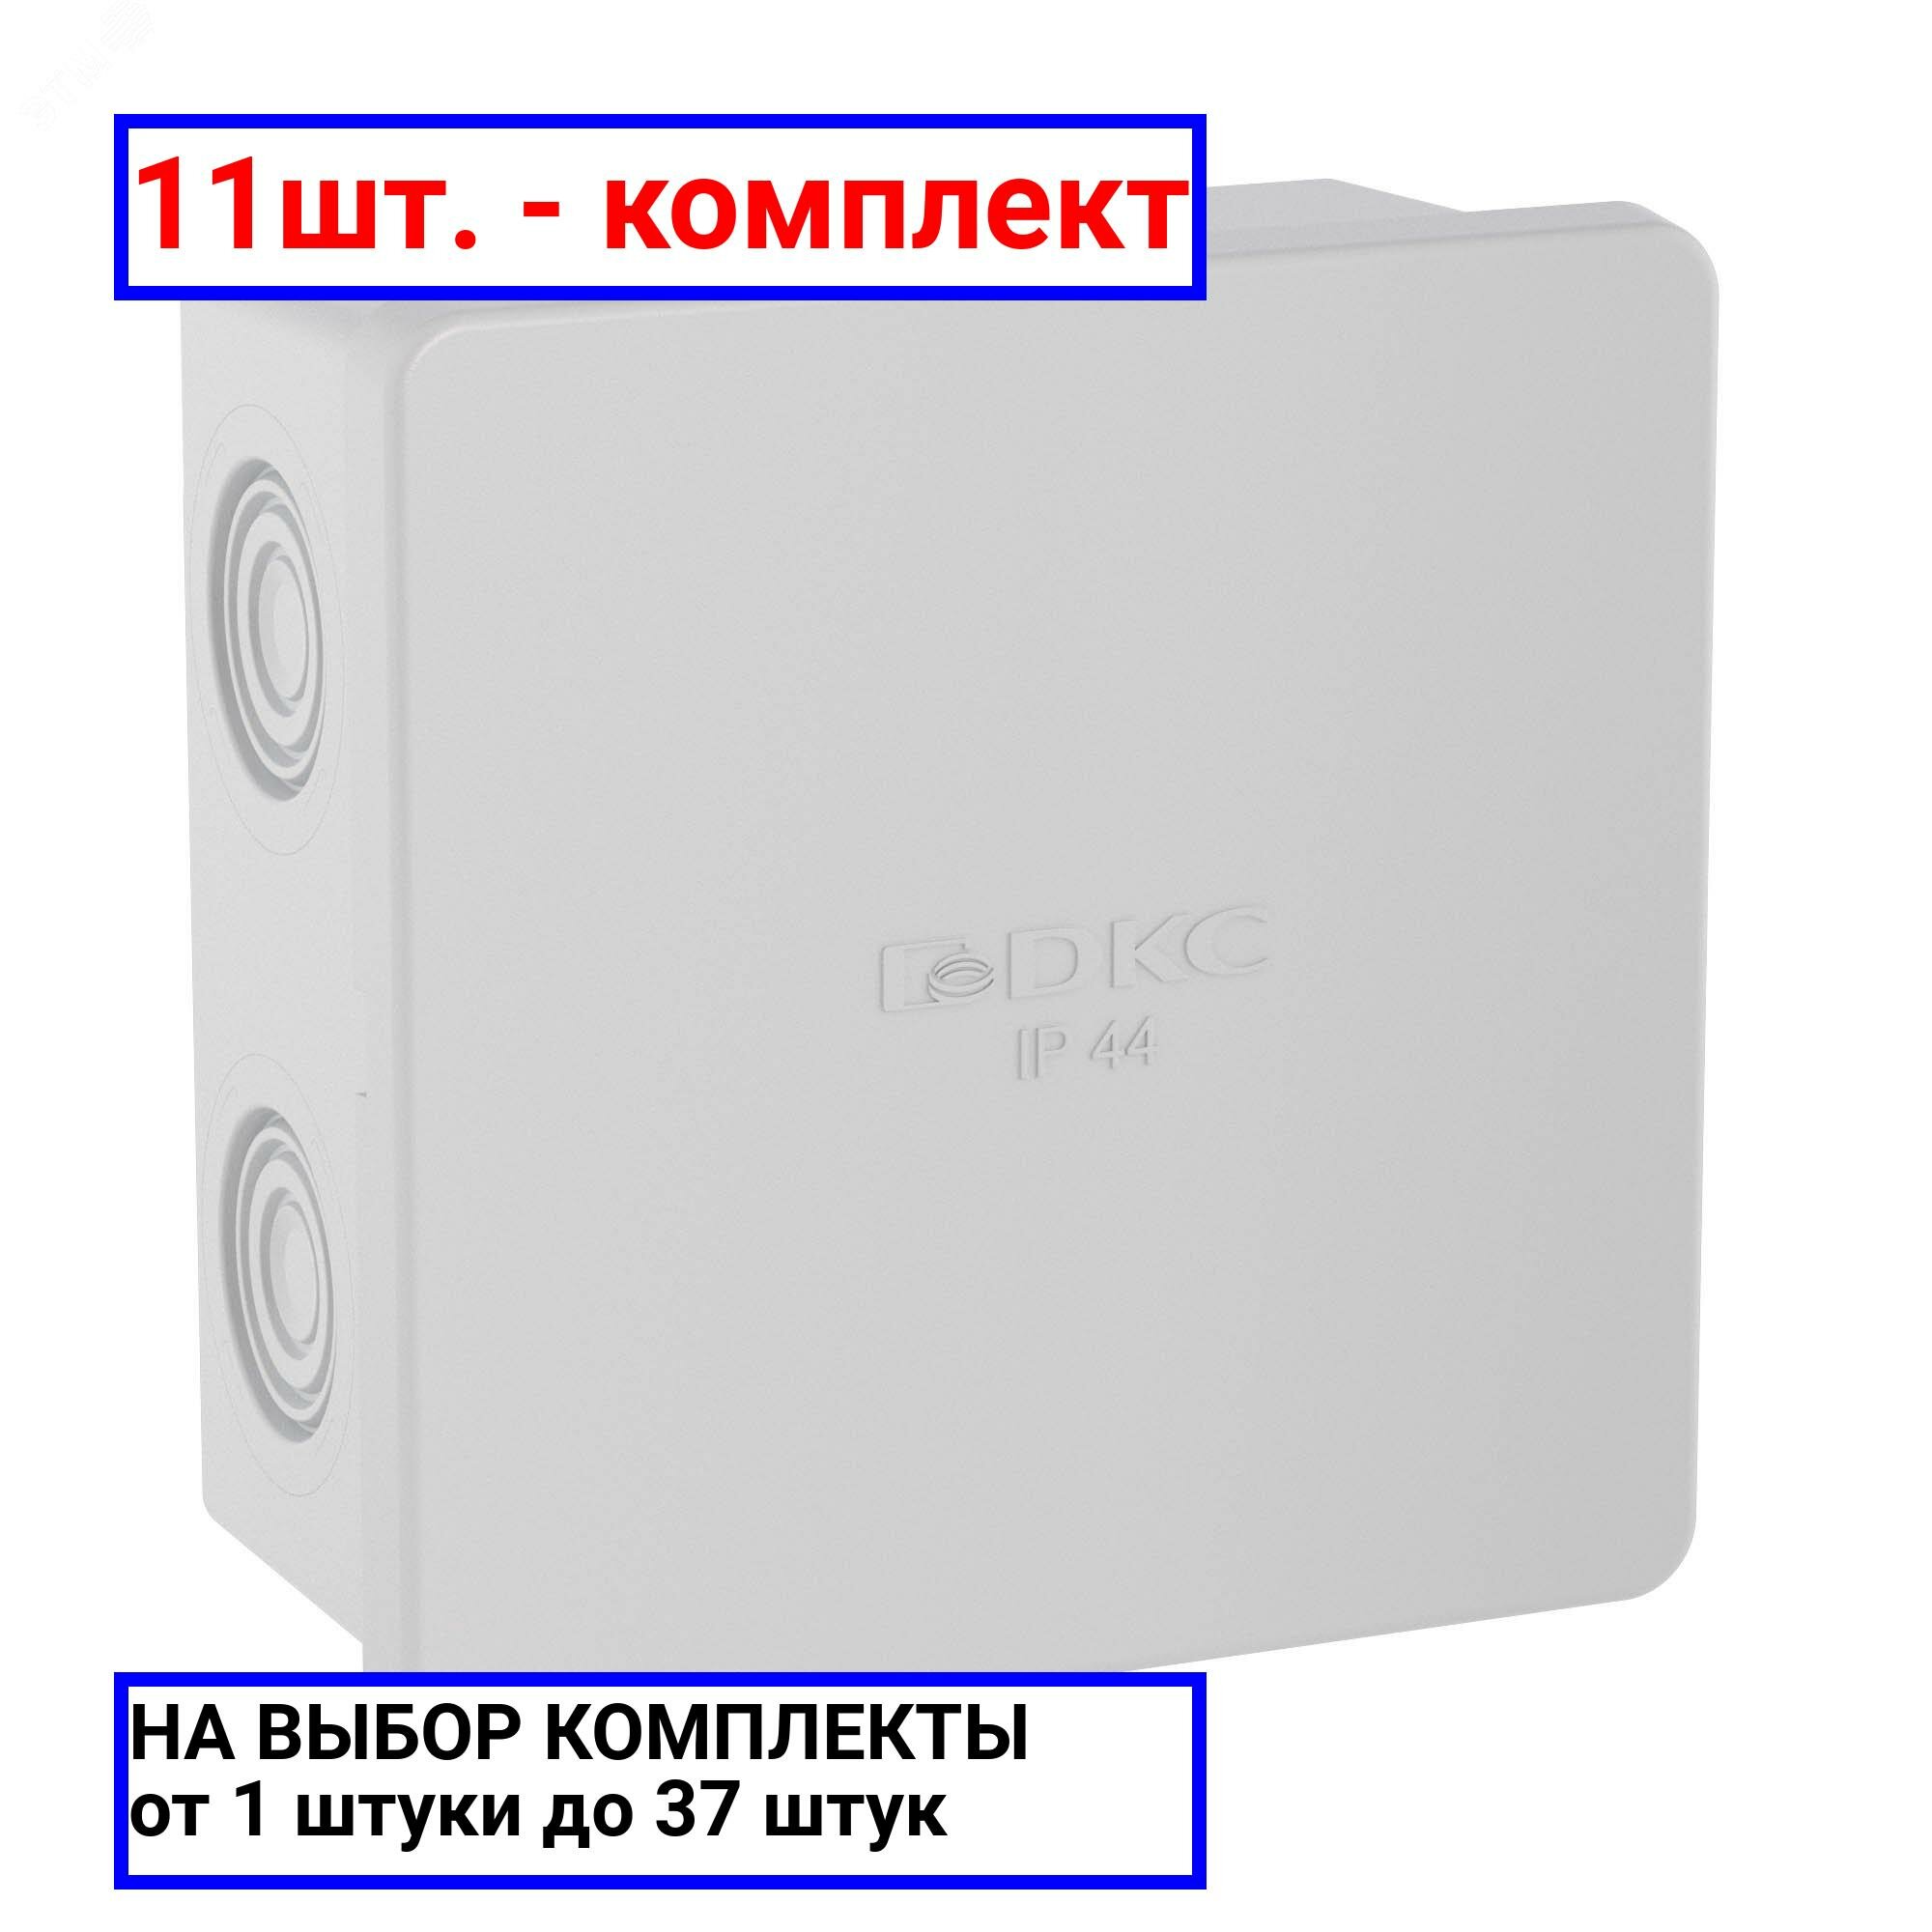 11шт. - Коробка распределительная 80х80х40мм IP44 с кабельными вводами / DKC; арт. 53700; оригинал / - комплект 11шт